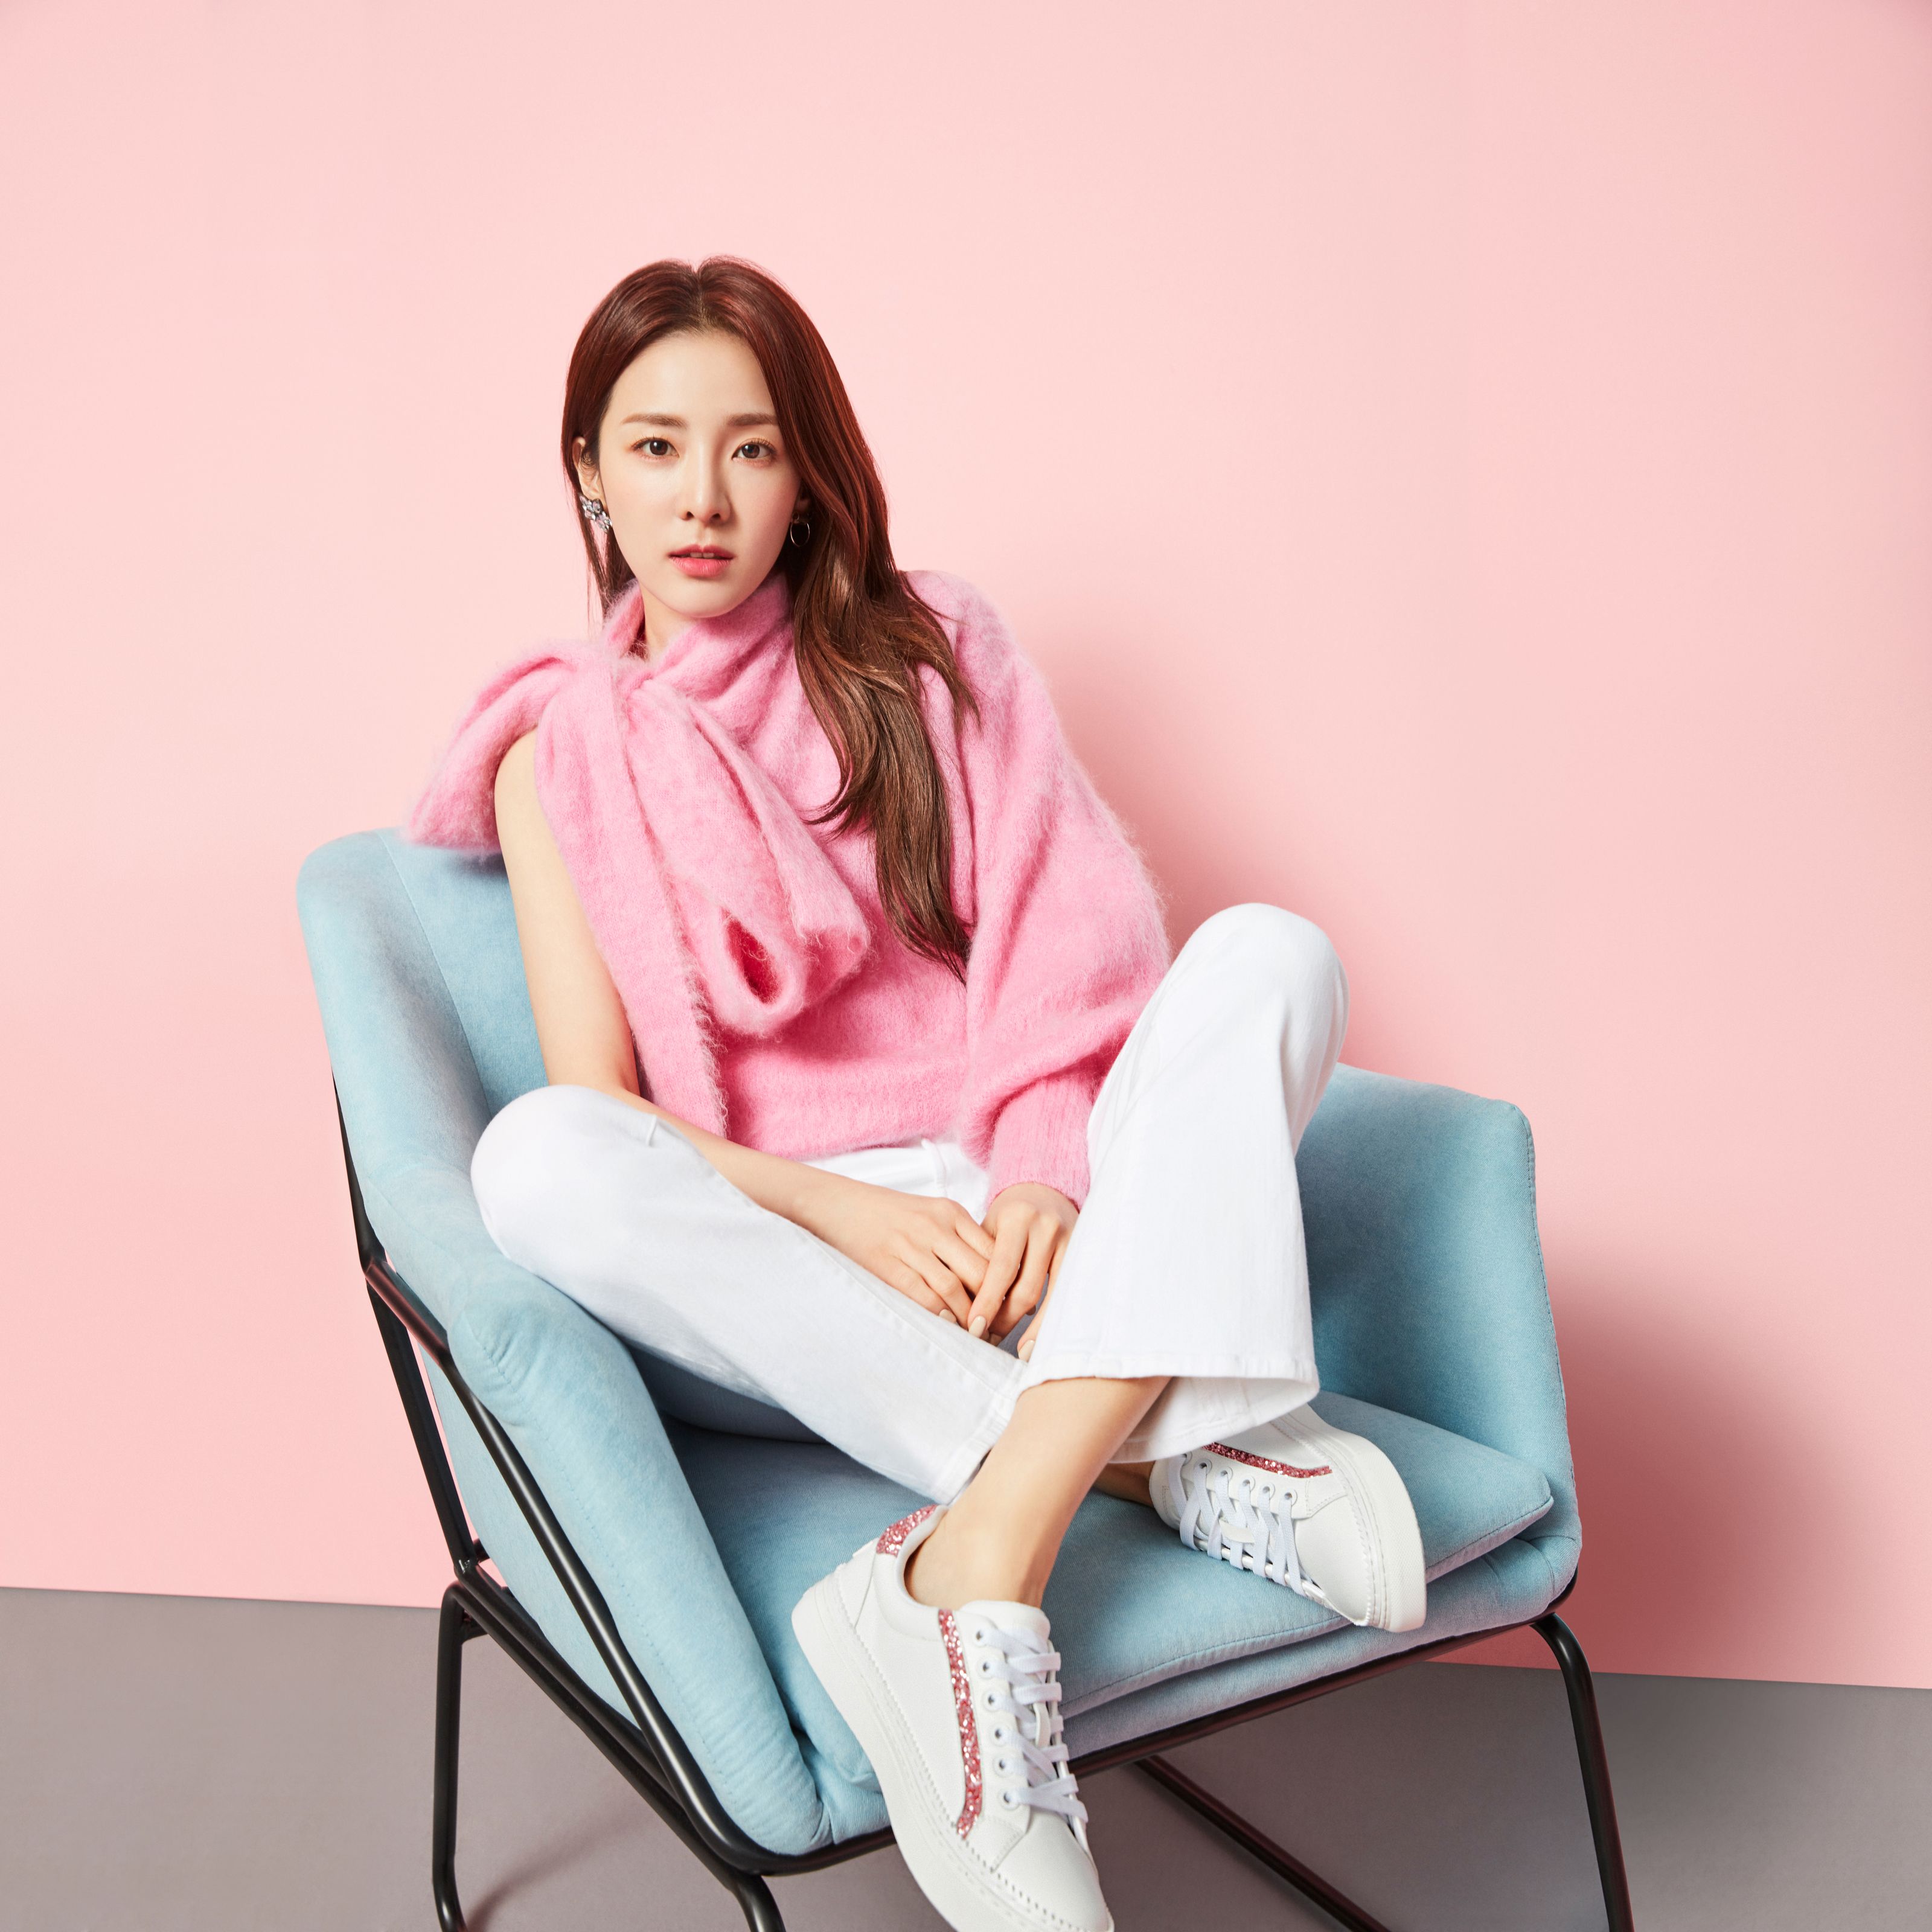 美國時尚網站YOOX與韓牌鞋履始祖SUECOMMA BONNIE合作推出春季膠囊系列